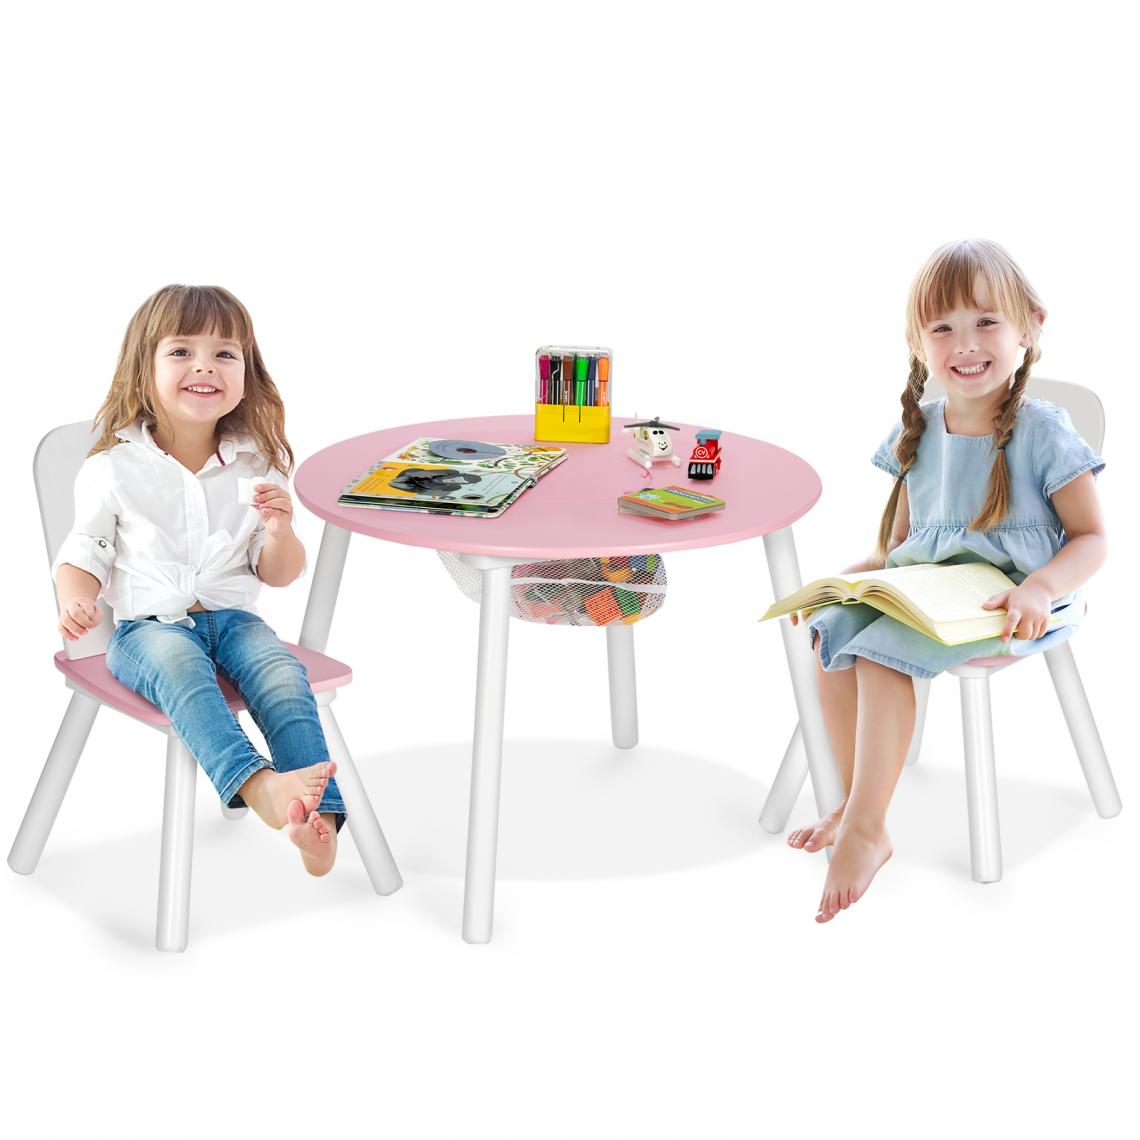 Costway - Table pour Enfants avec 2 Chaises,Table Ronde avec Espace de Rangement pour Jouets Rose - Tables à manger